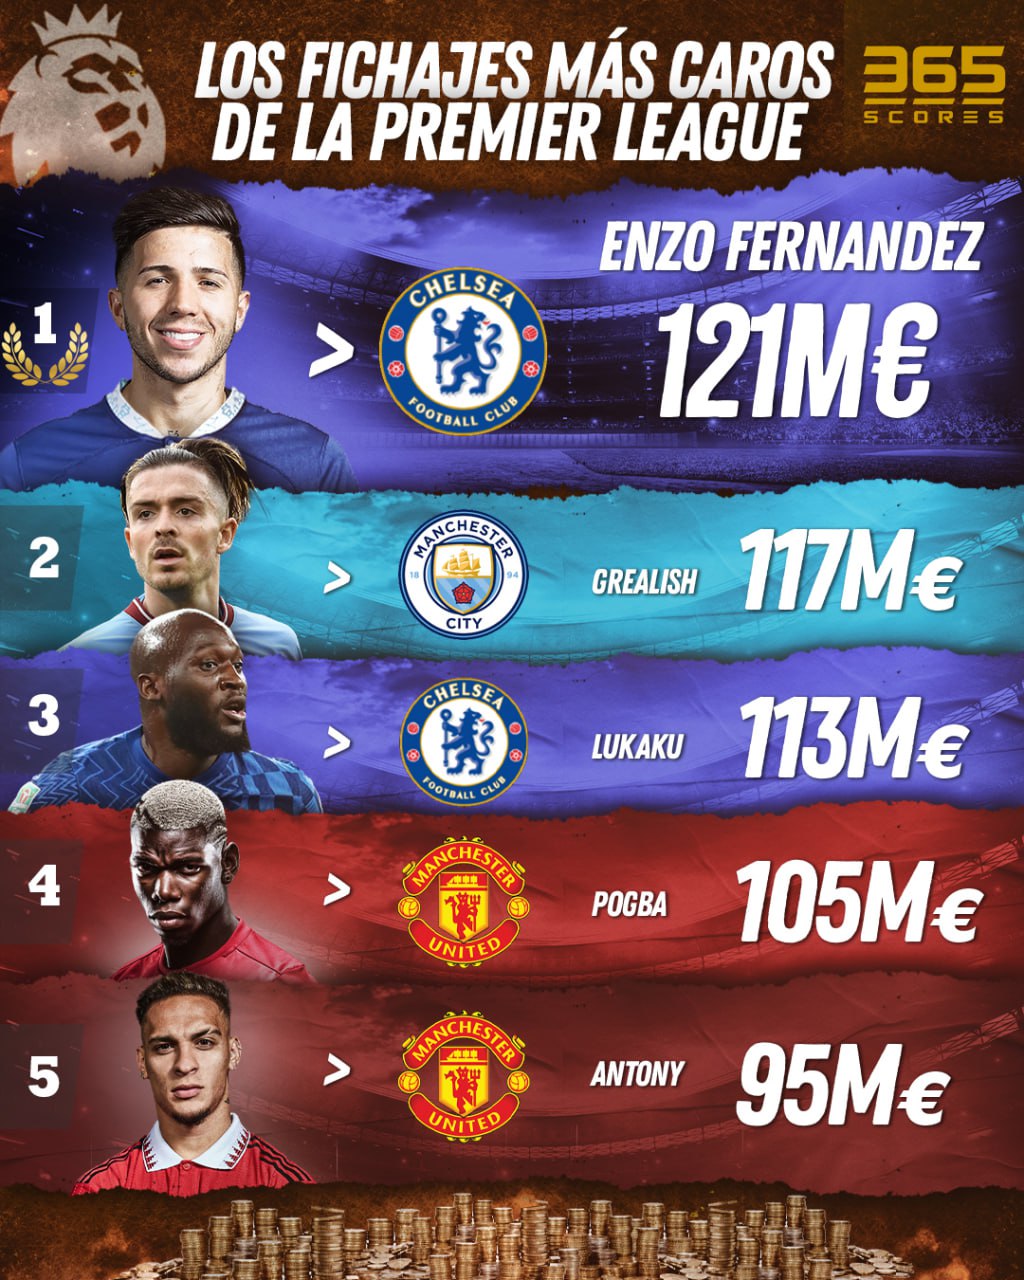 Enzo Fernández, el más caro de la Premier League